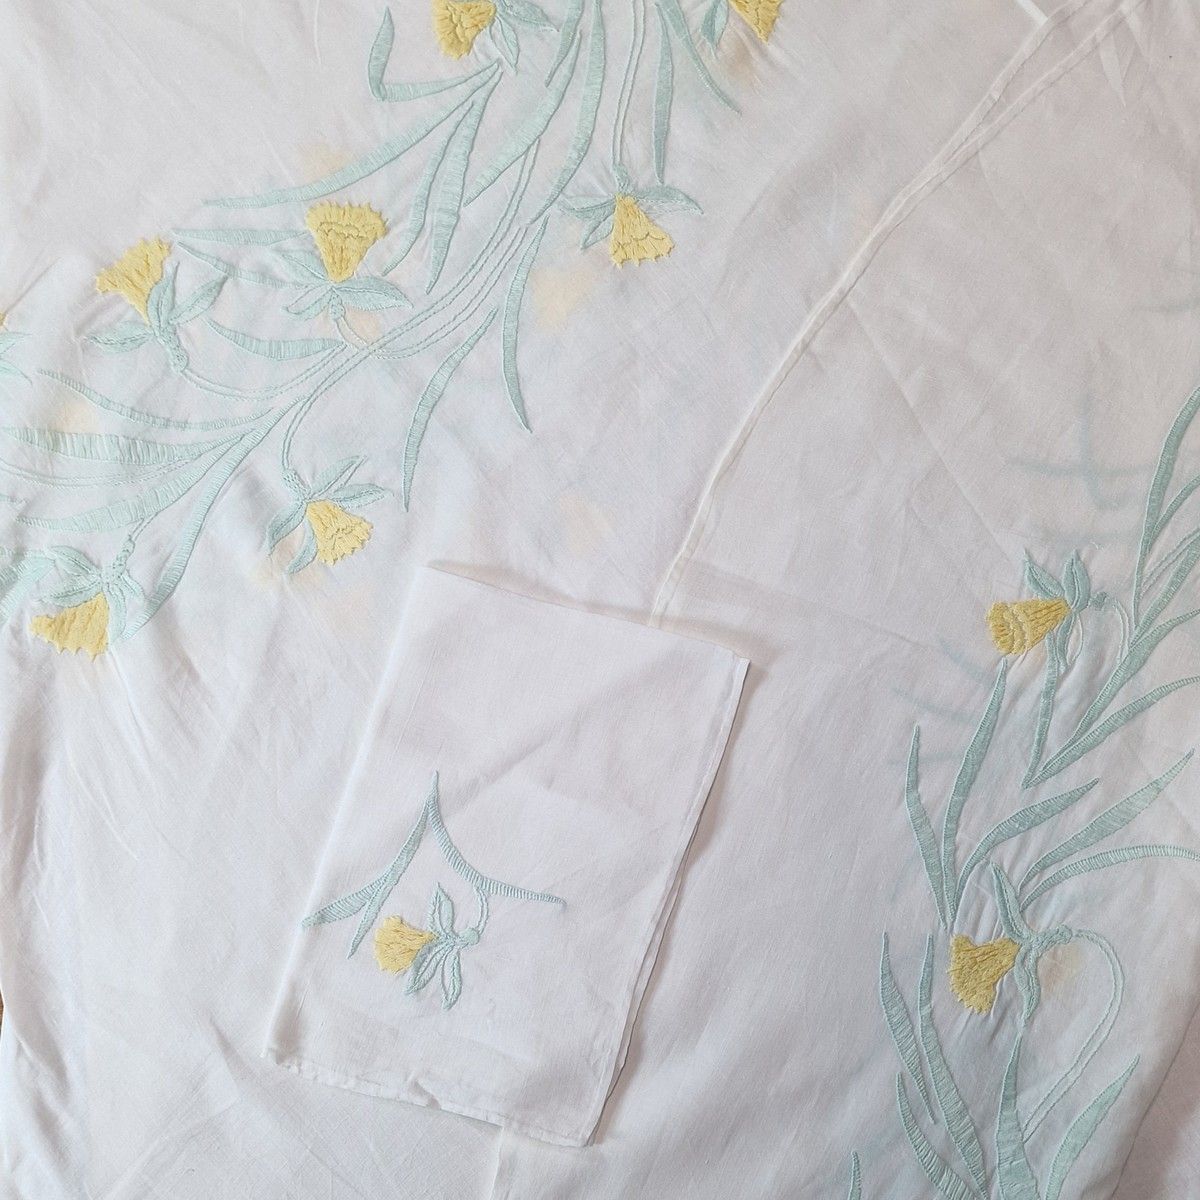 Null 约 1960 年用棉线缝制的牛皮围巾和 6 条毛巾套装，平针绣有黄绿相间的水仙花图案
205 厘米 x 196 厘米
BSC 
(按原样出售）